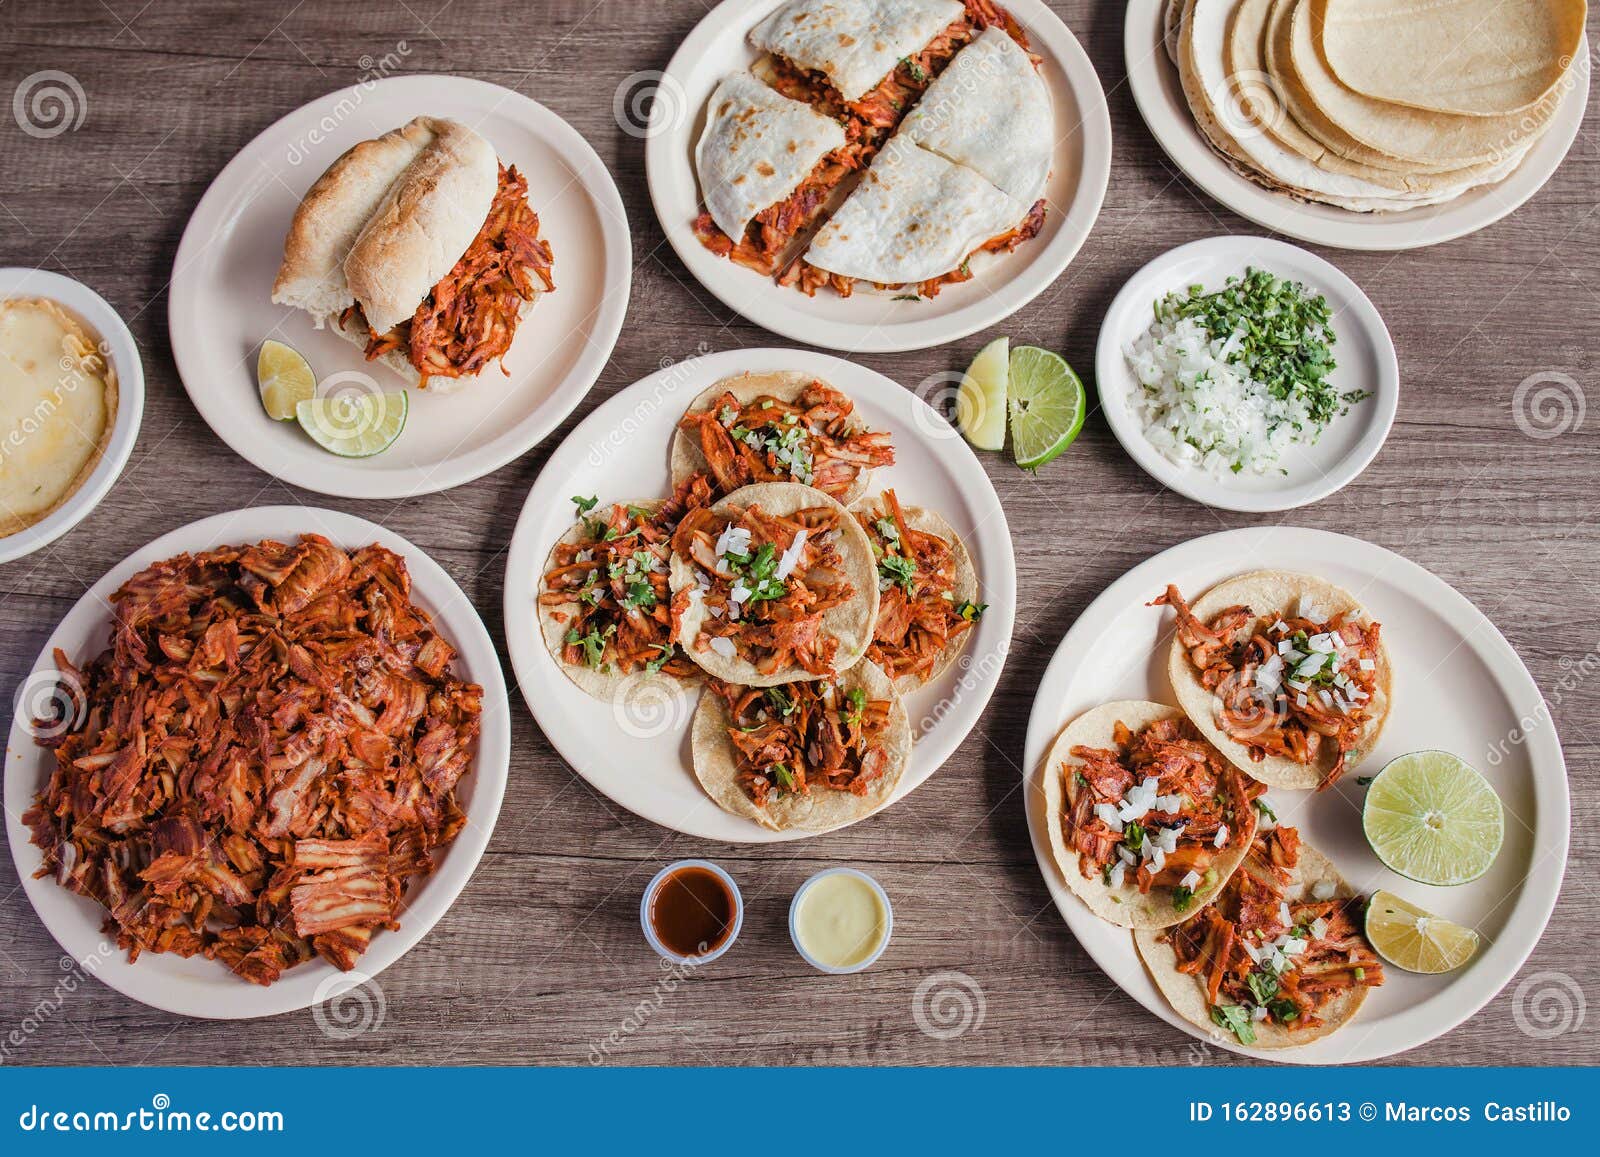 tacos al pastor, mexican food in taqueria mexico city